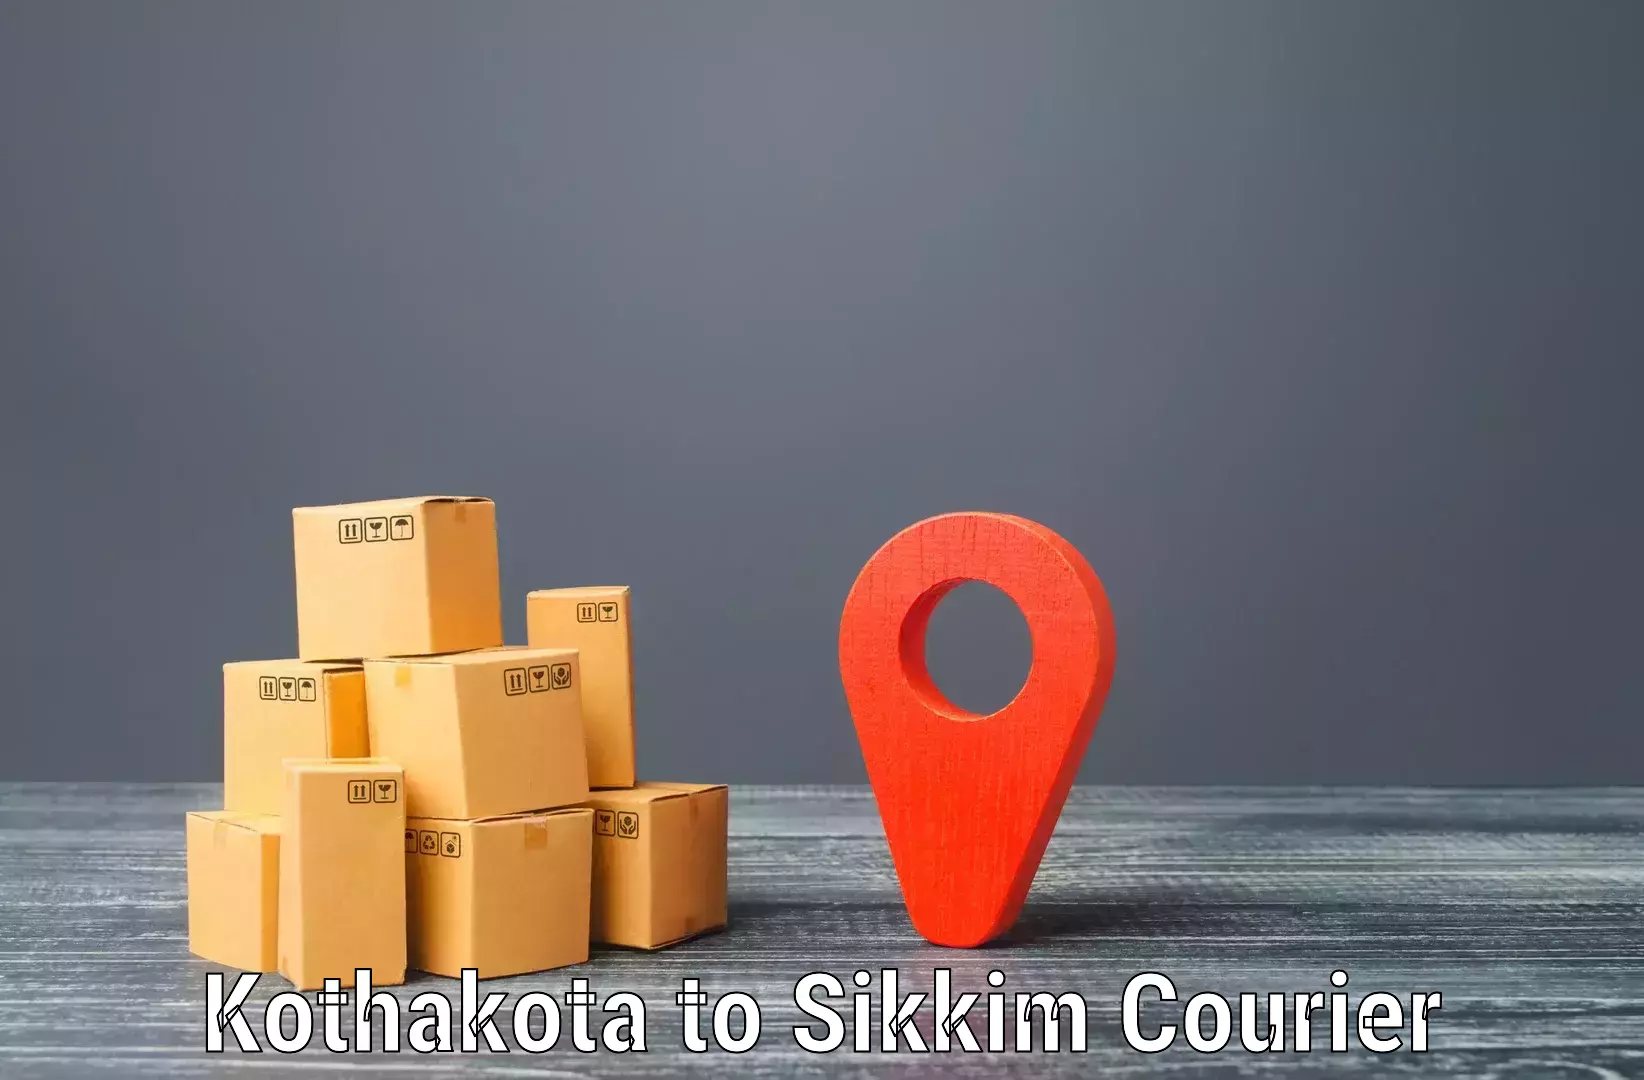 Quick booking process in Kothakota to Rongli